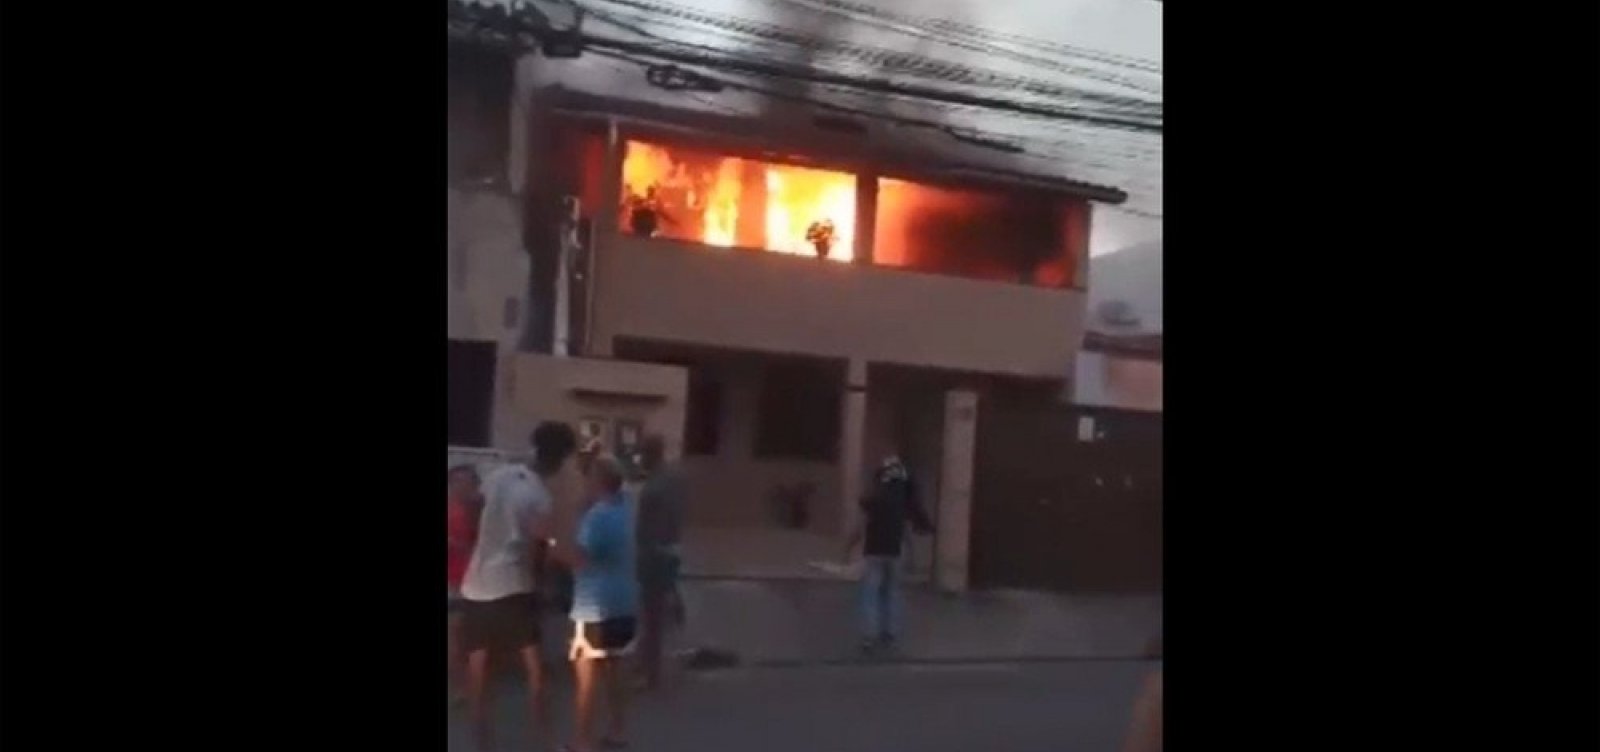 Após queda de vela, casa pega fogo em Lauro de Freitas